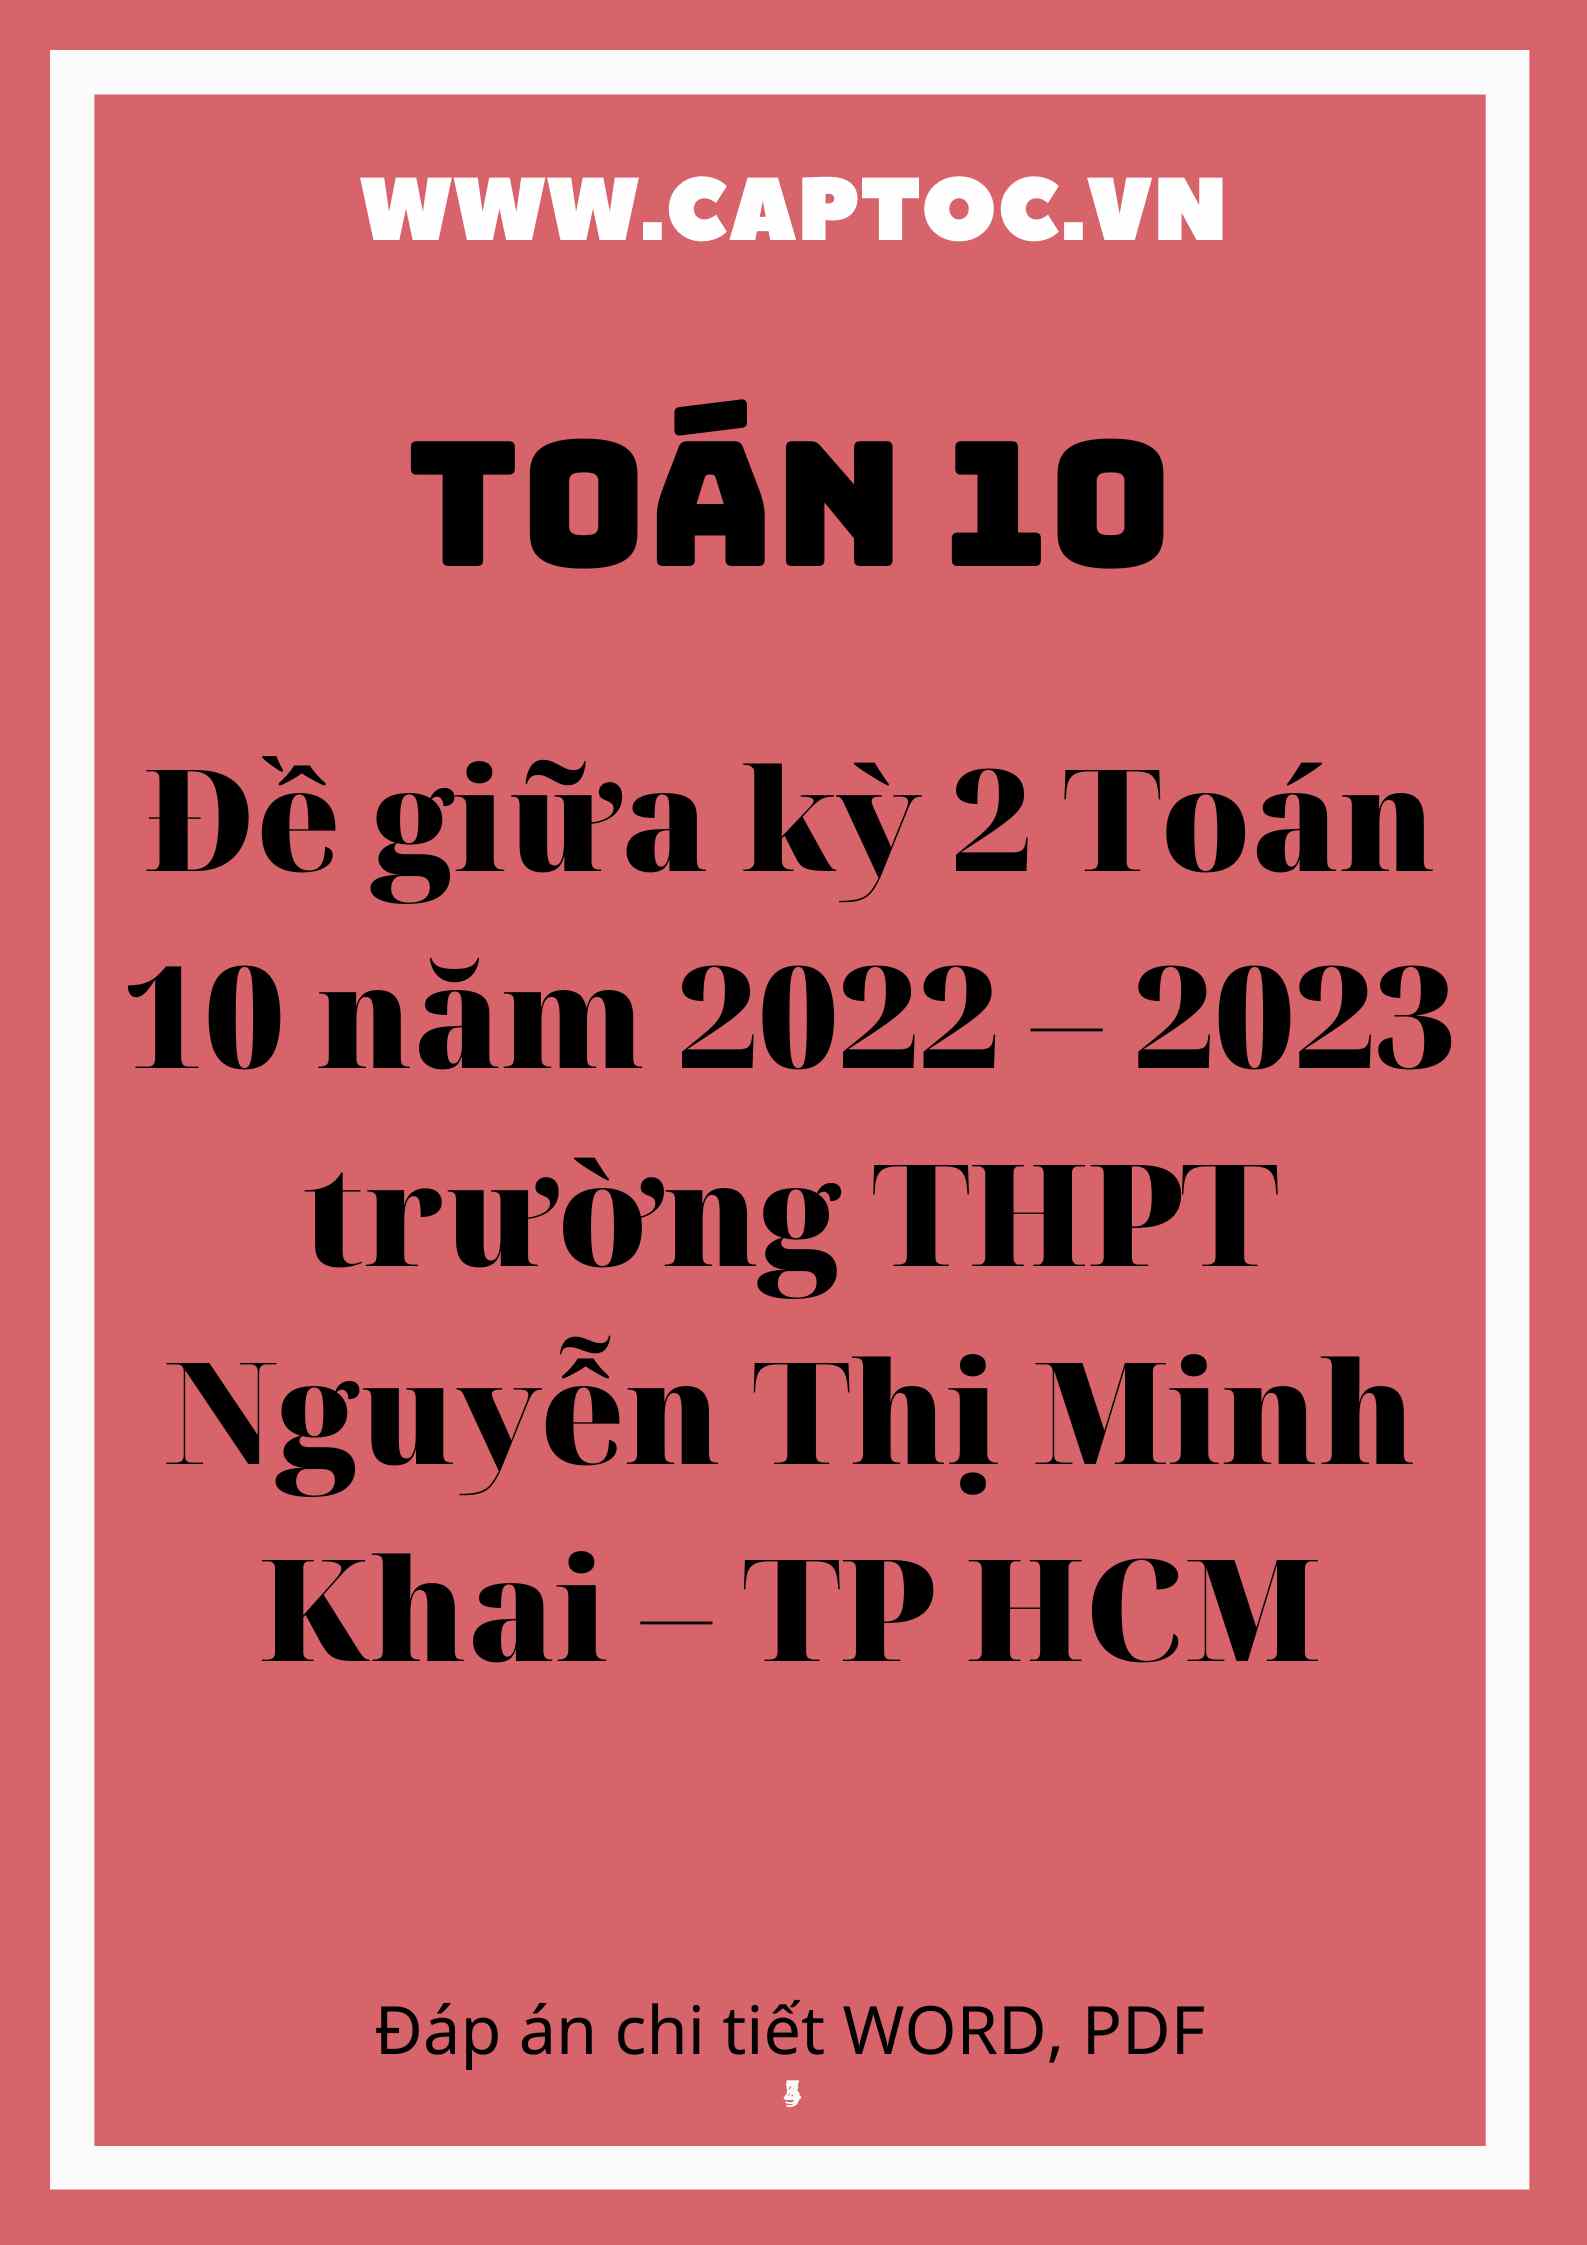 Đề giữa kỳ 2 Toán 10 năm 2022 – 2023 trường THPT Nguyễn Thị Minh Khai – TP HCM